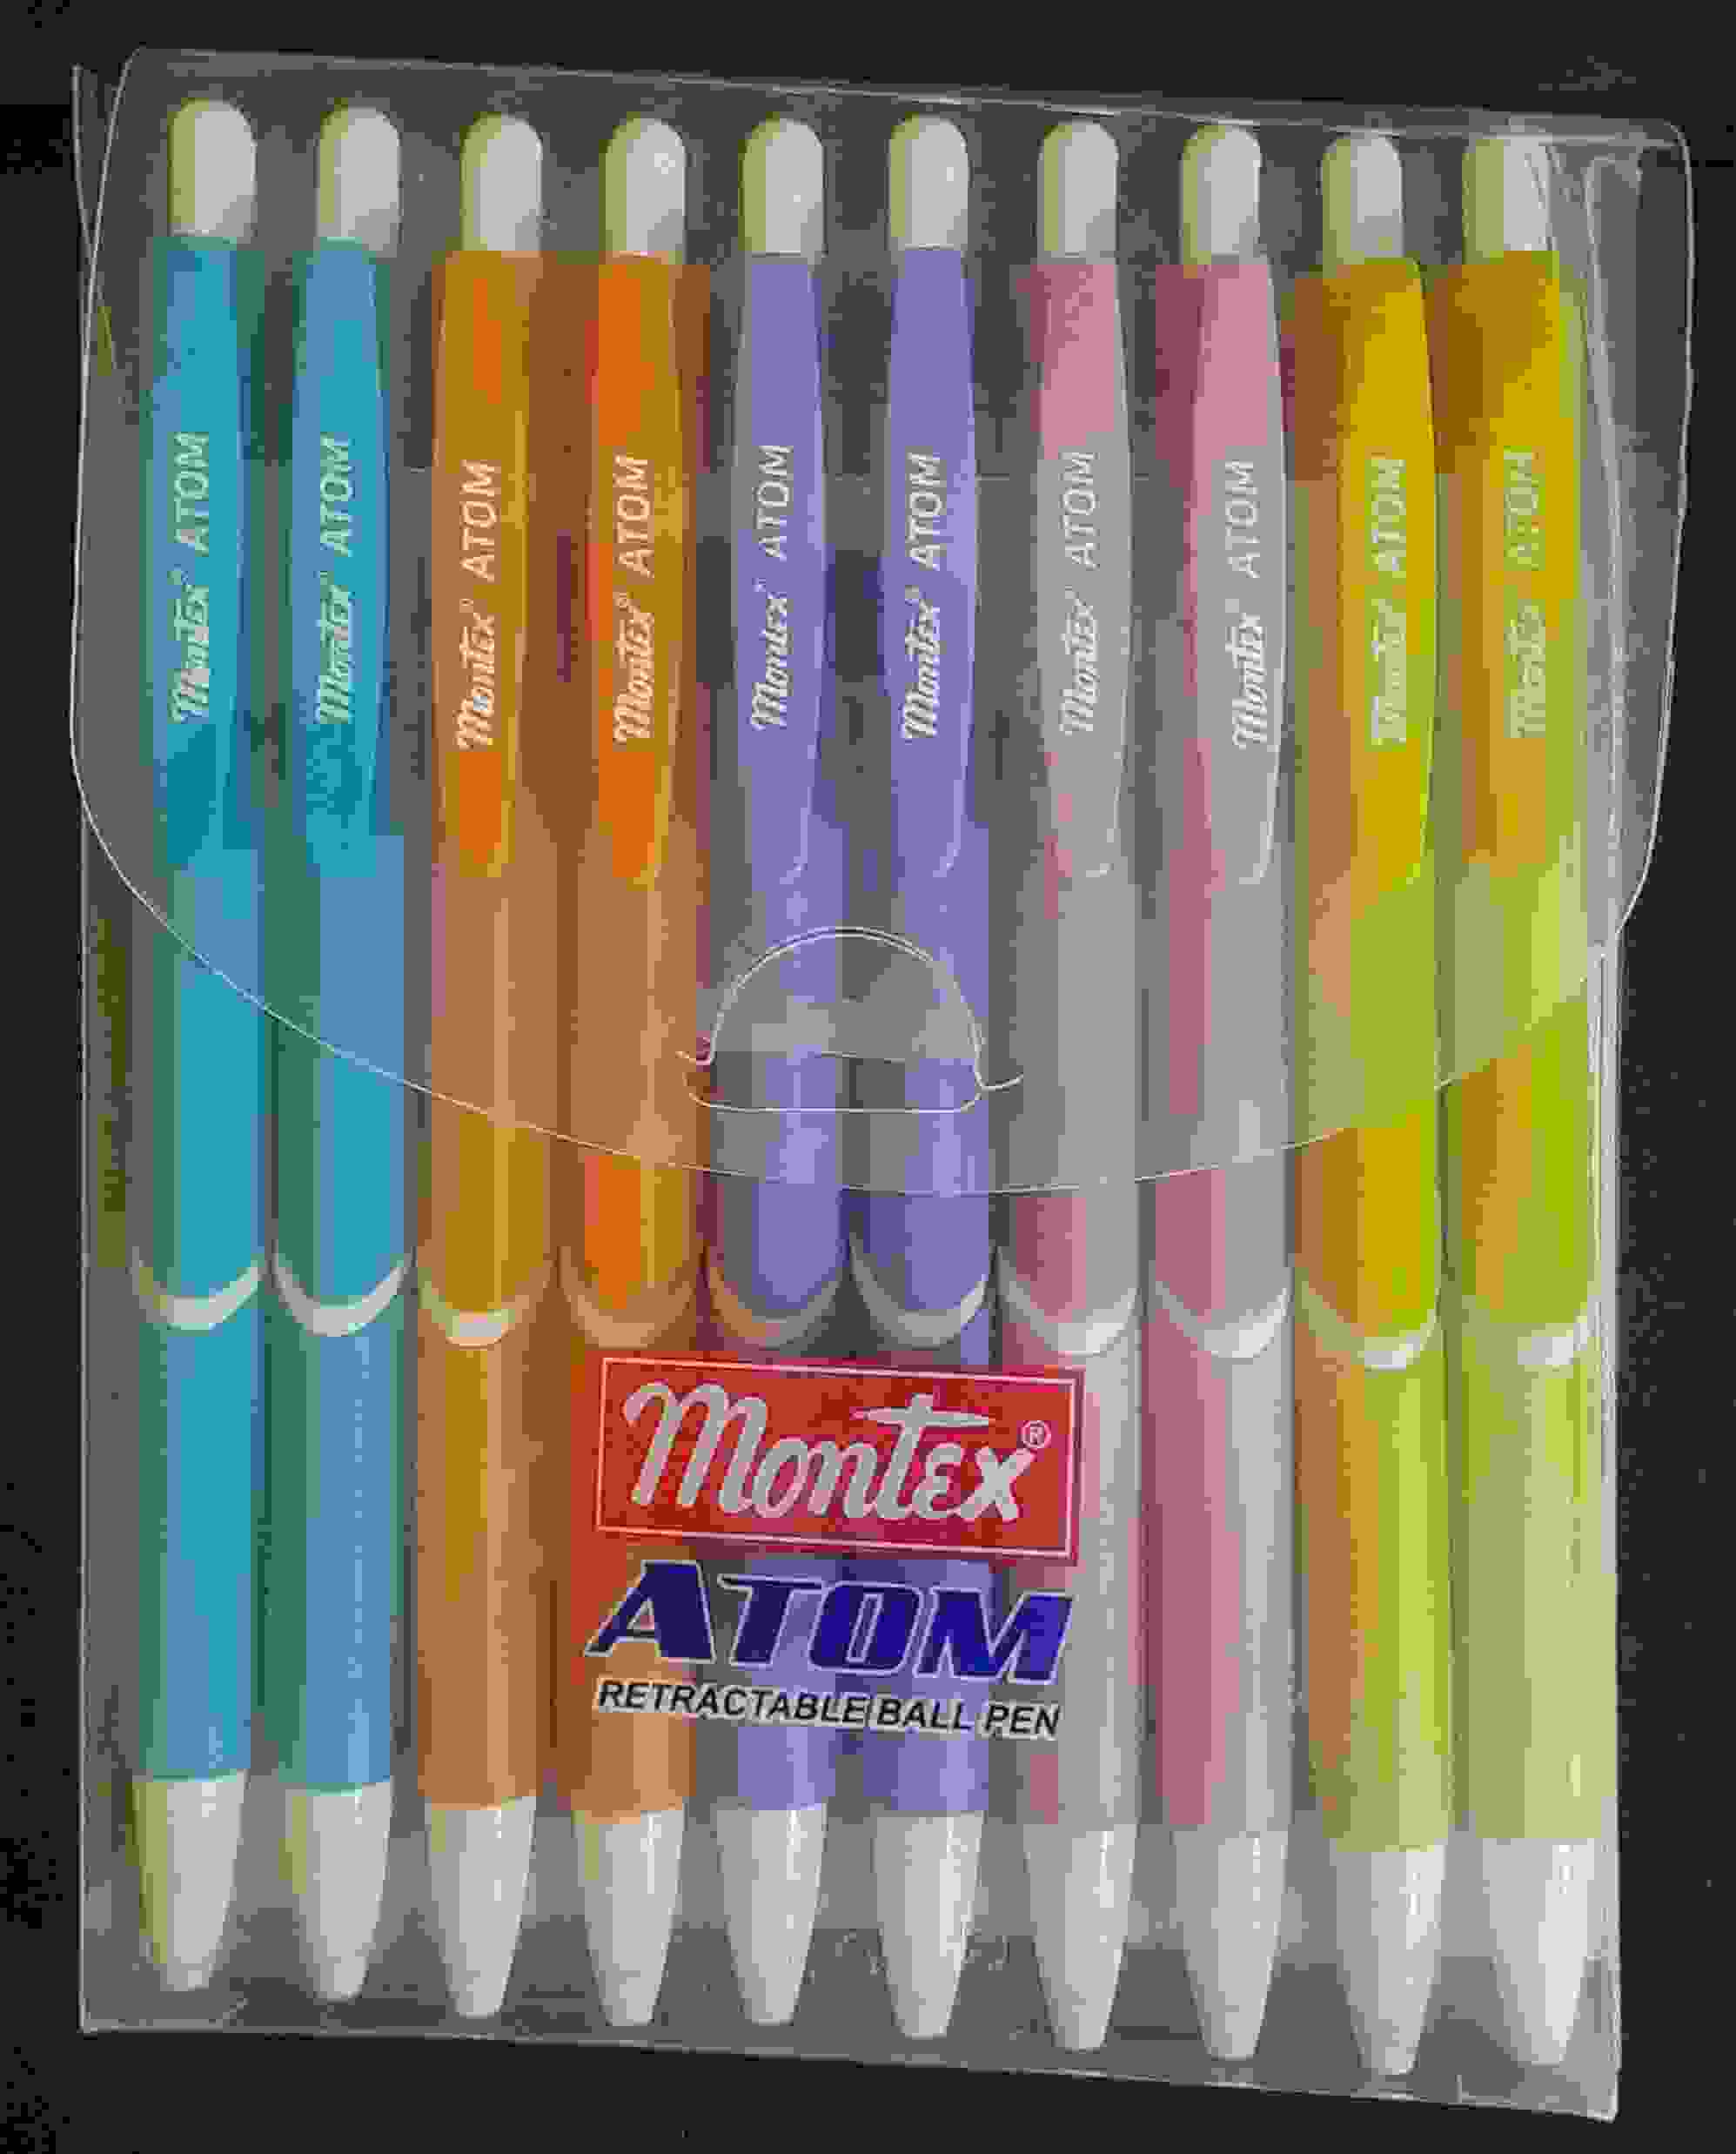 Ball Pen Blue Colour - Retractable ball pen - Montex Atom brand - Pack of 10Nos